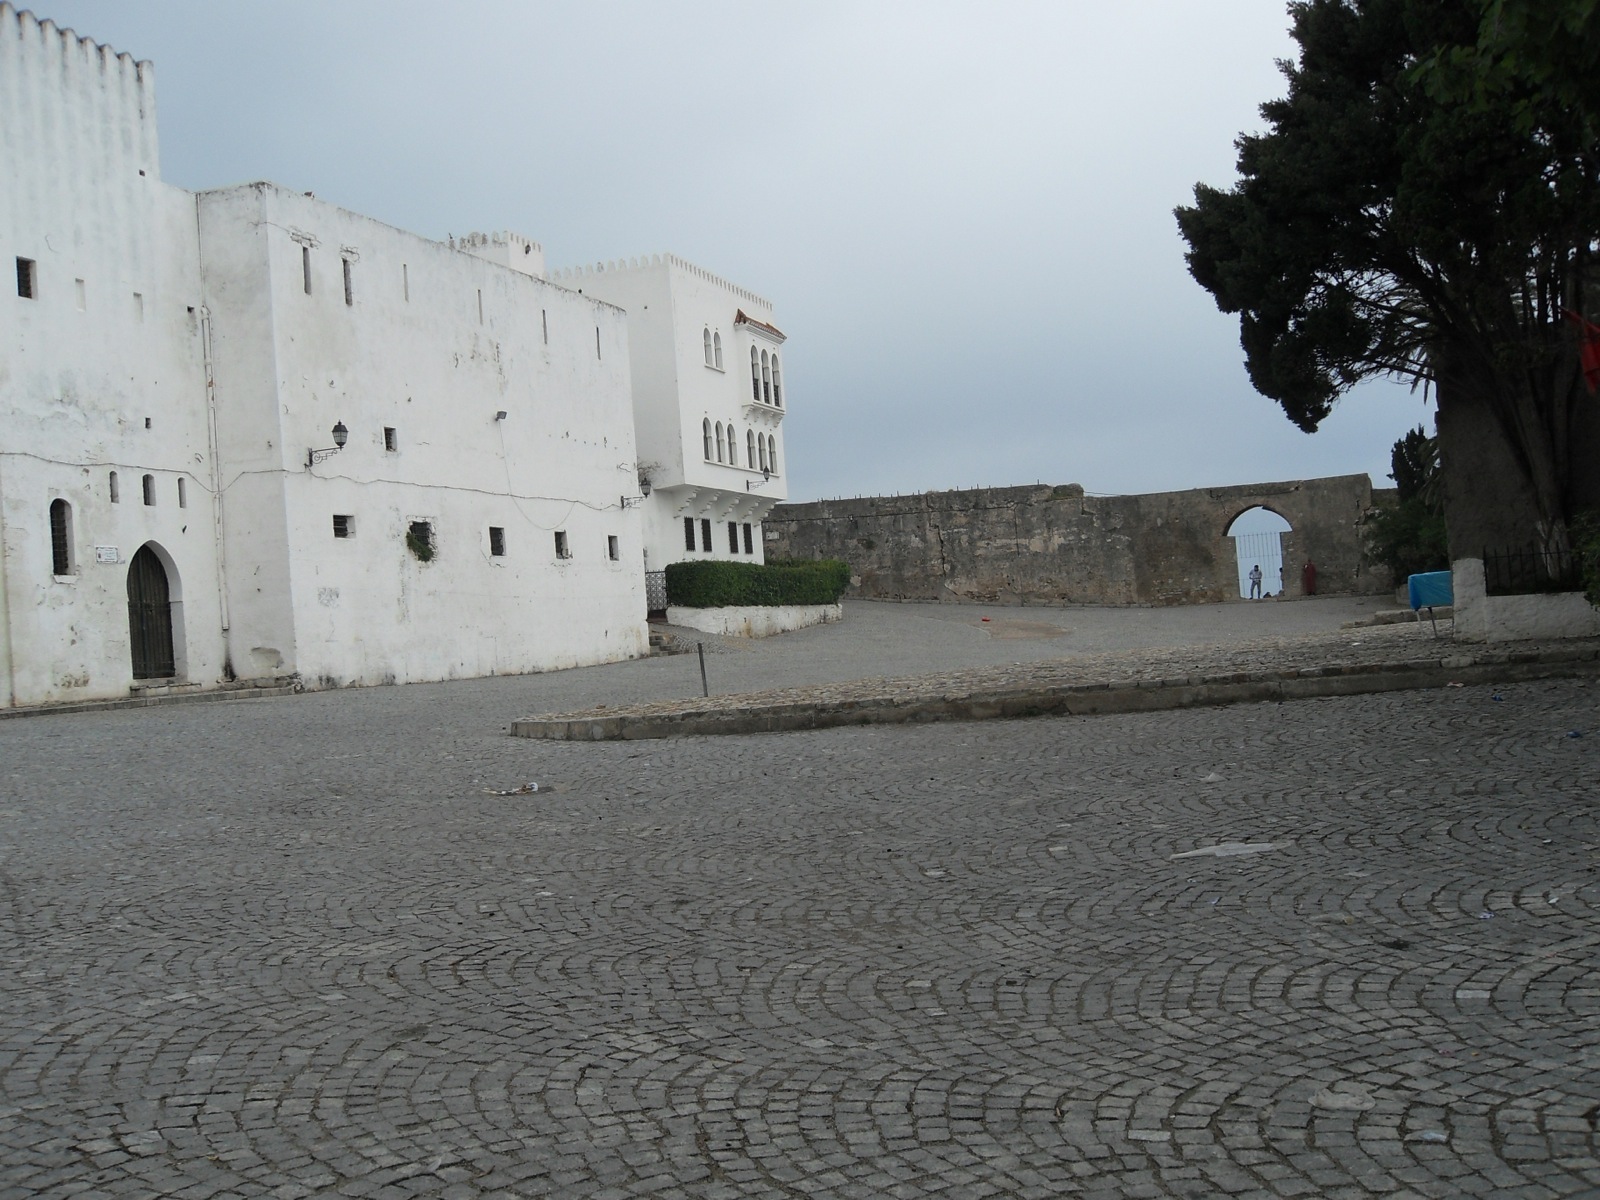 Musée la Kasbah des cultures méditerranéennes de Tanger - General view, Place de la Casbah toward Bab al-Bahar